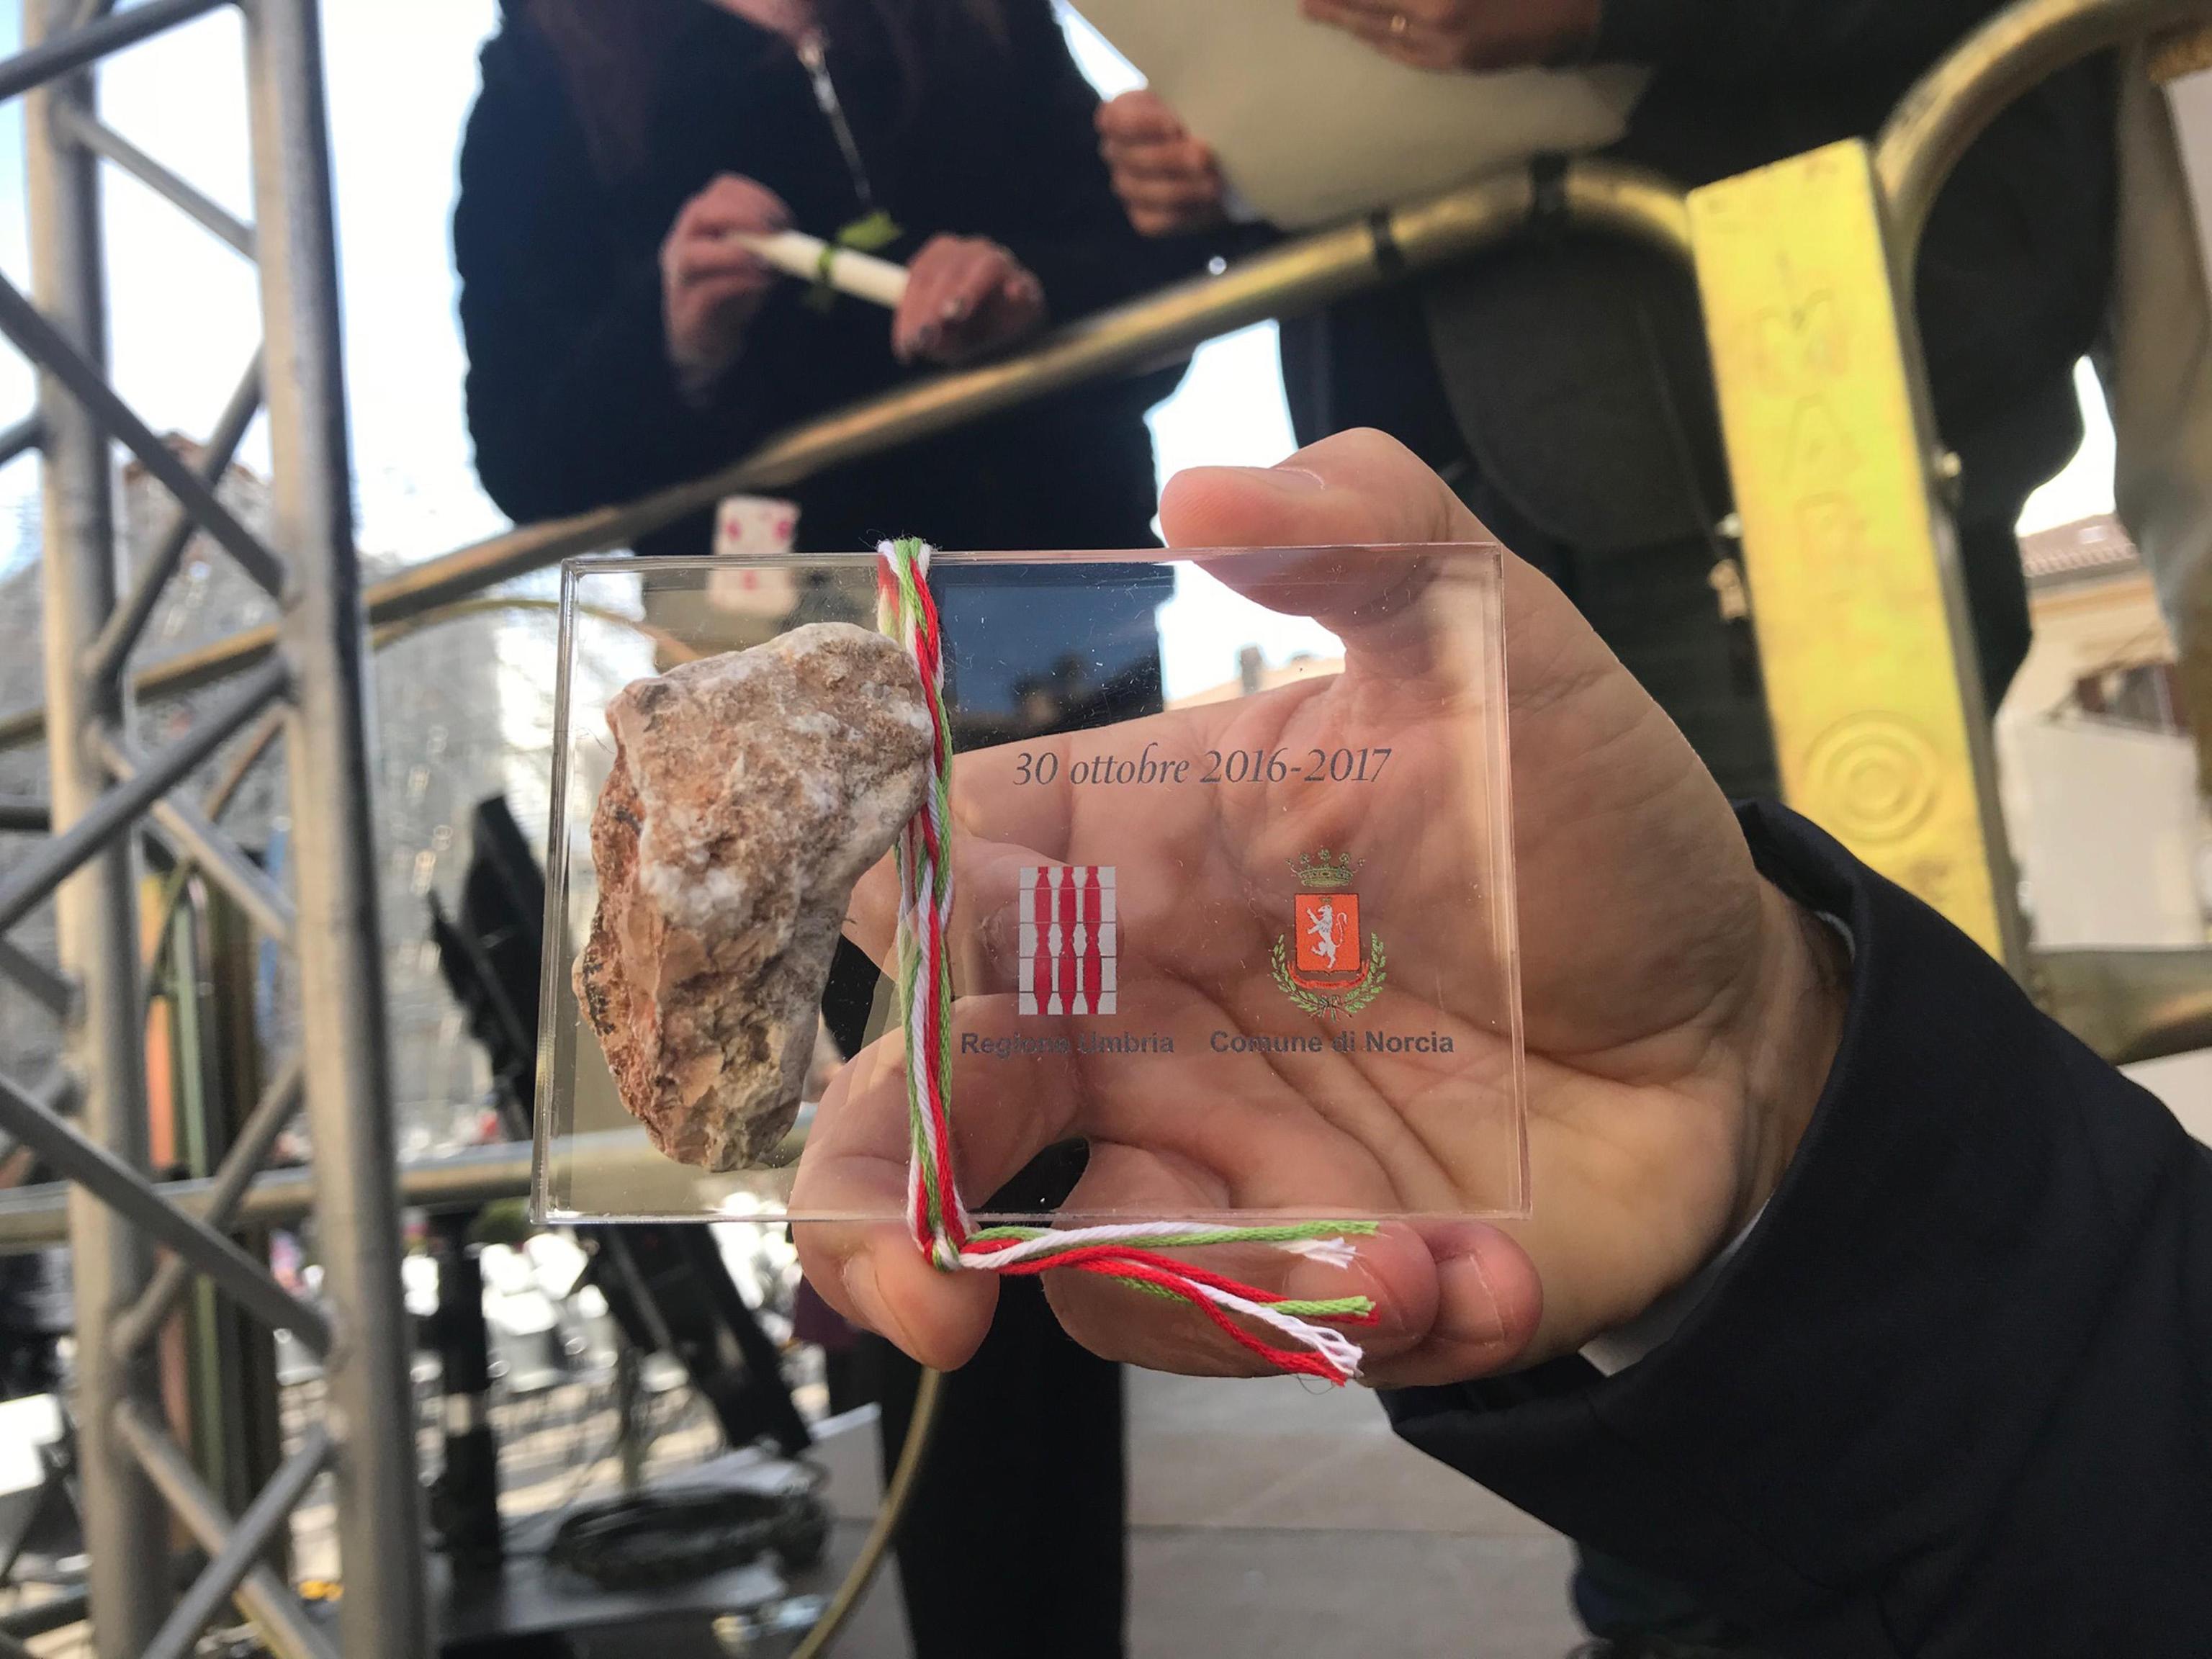 Il sindaco di Norcia Nicola Alemanno dona pietre delle macerie di Norcia agli esponenti del mondo istituzionale, alle forze dell'ordine e alle associazioni del volontariato in occasione delle commemorazioni del terremoto di un anno fa, 30 ottobre 2017.
ANSA/ GIANLUIGI BASILIETTI